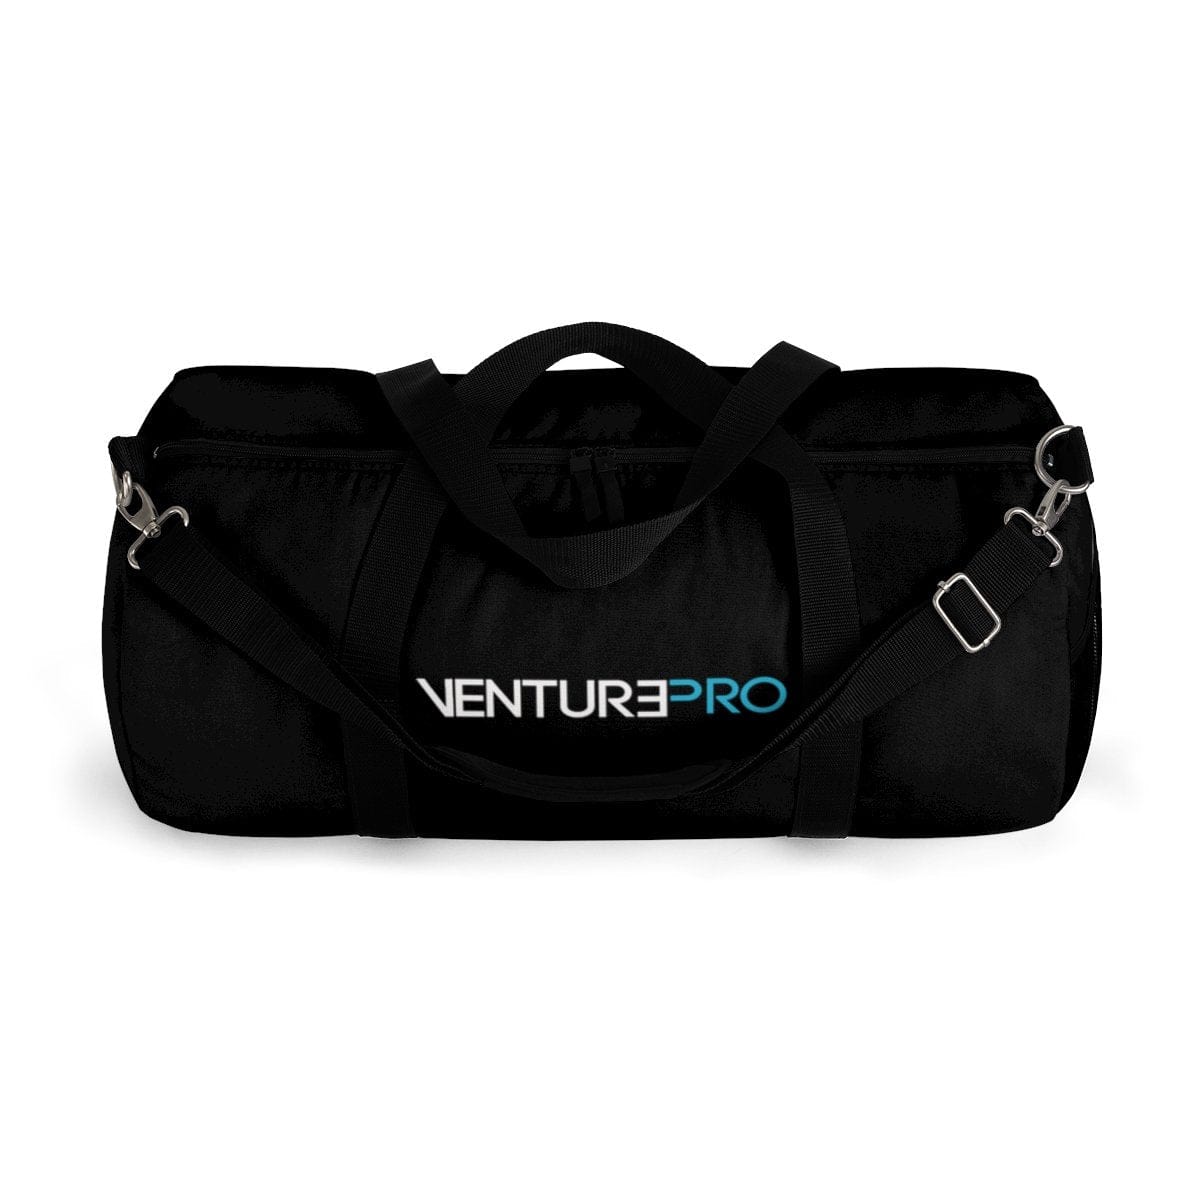 Explorer DNA Venture Pro Duffel Bag